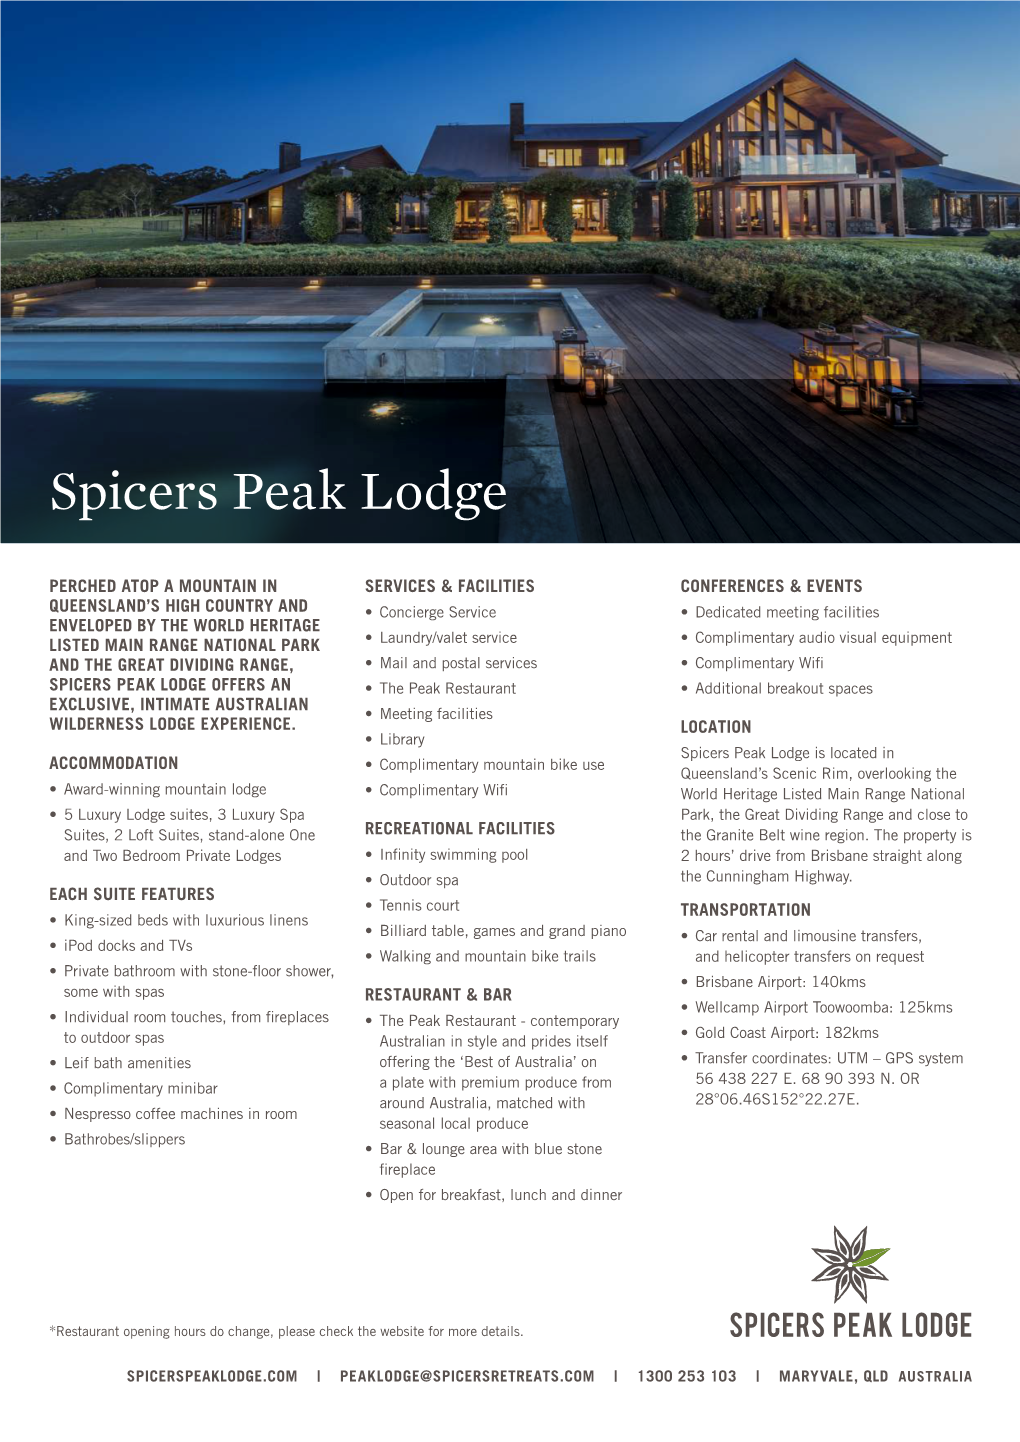 Spicers Peak Lodge